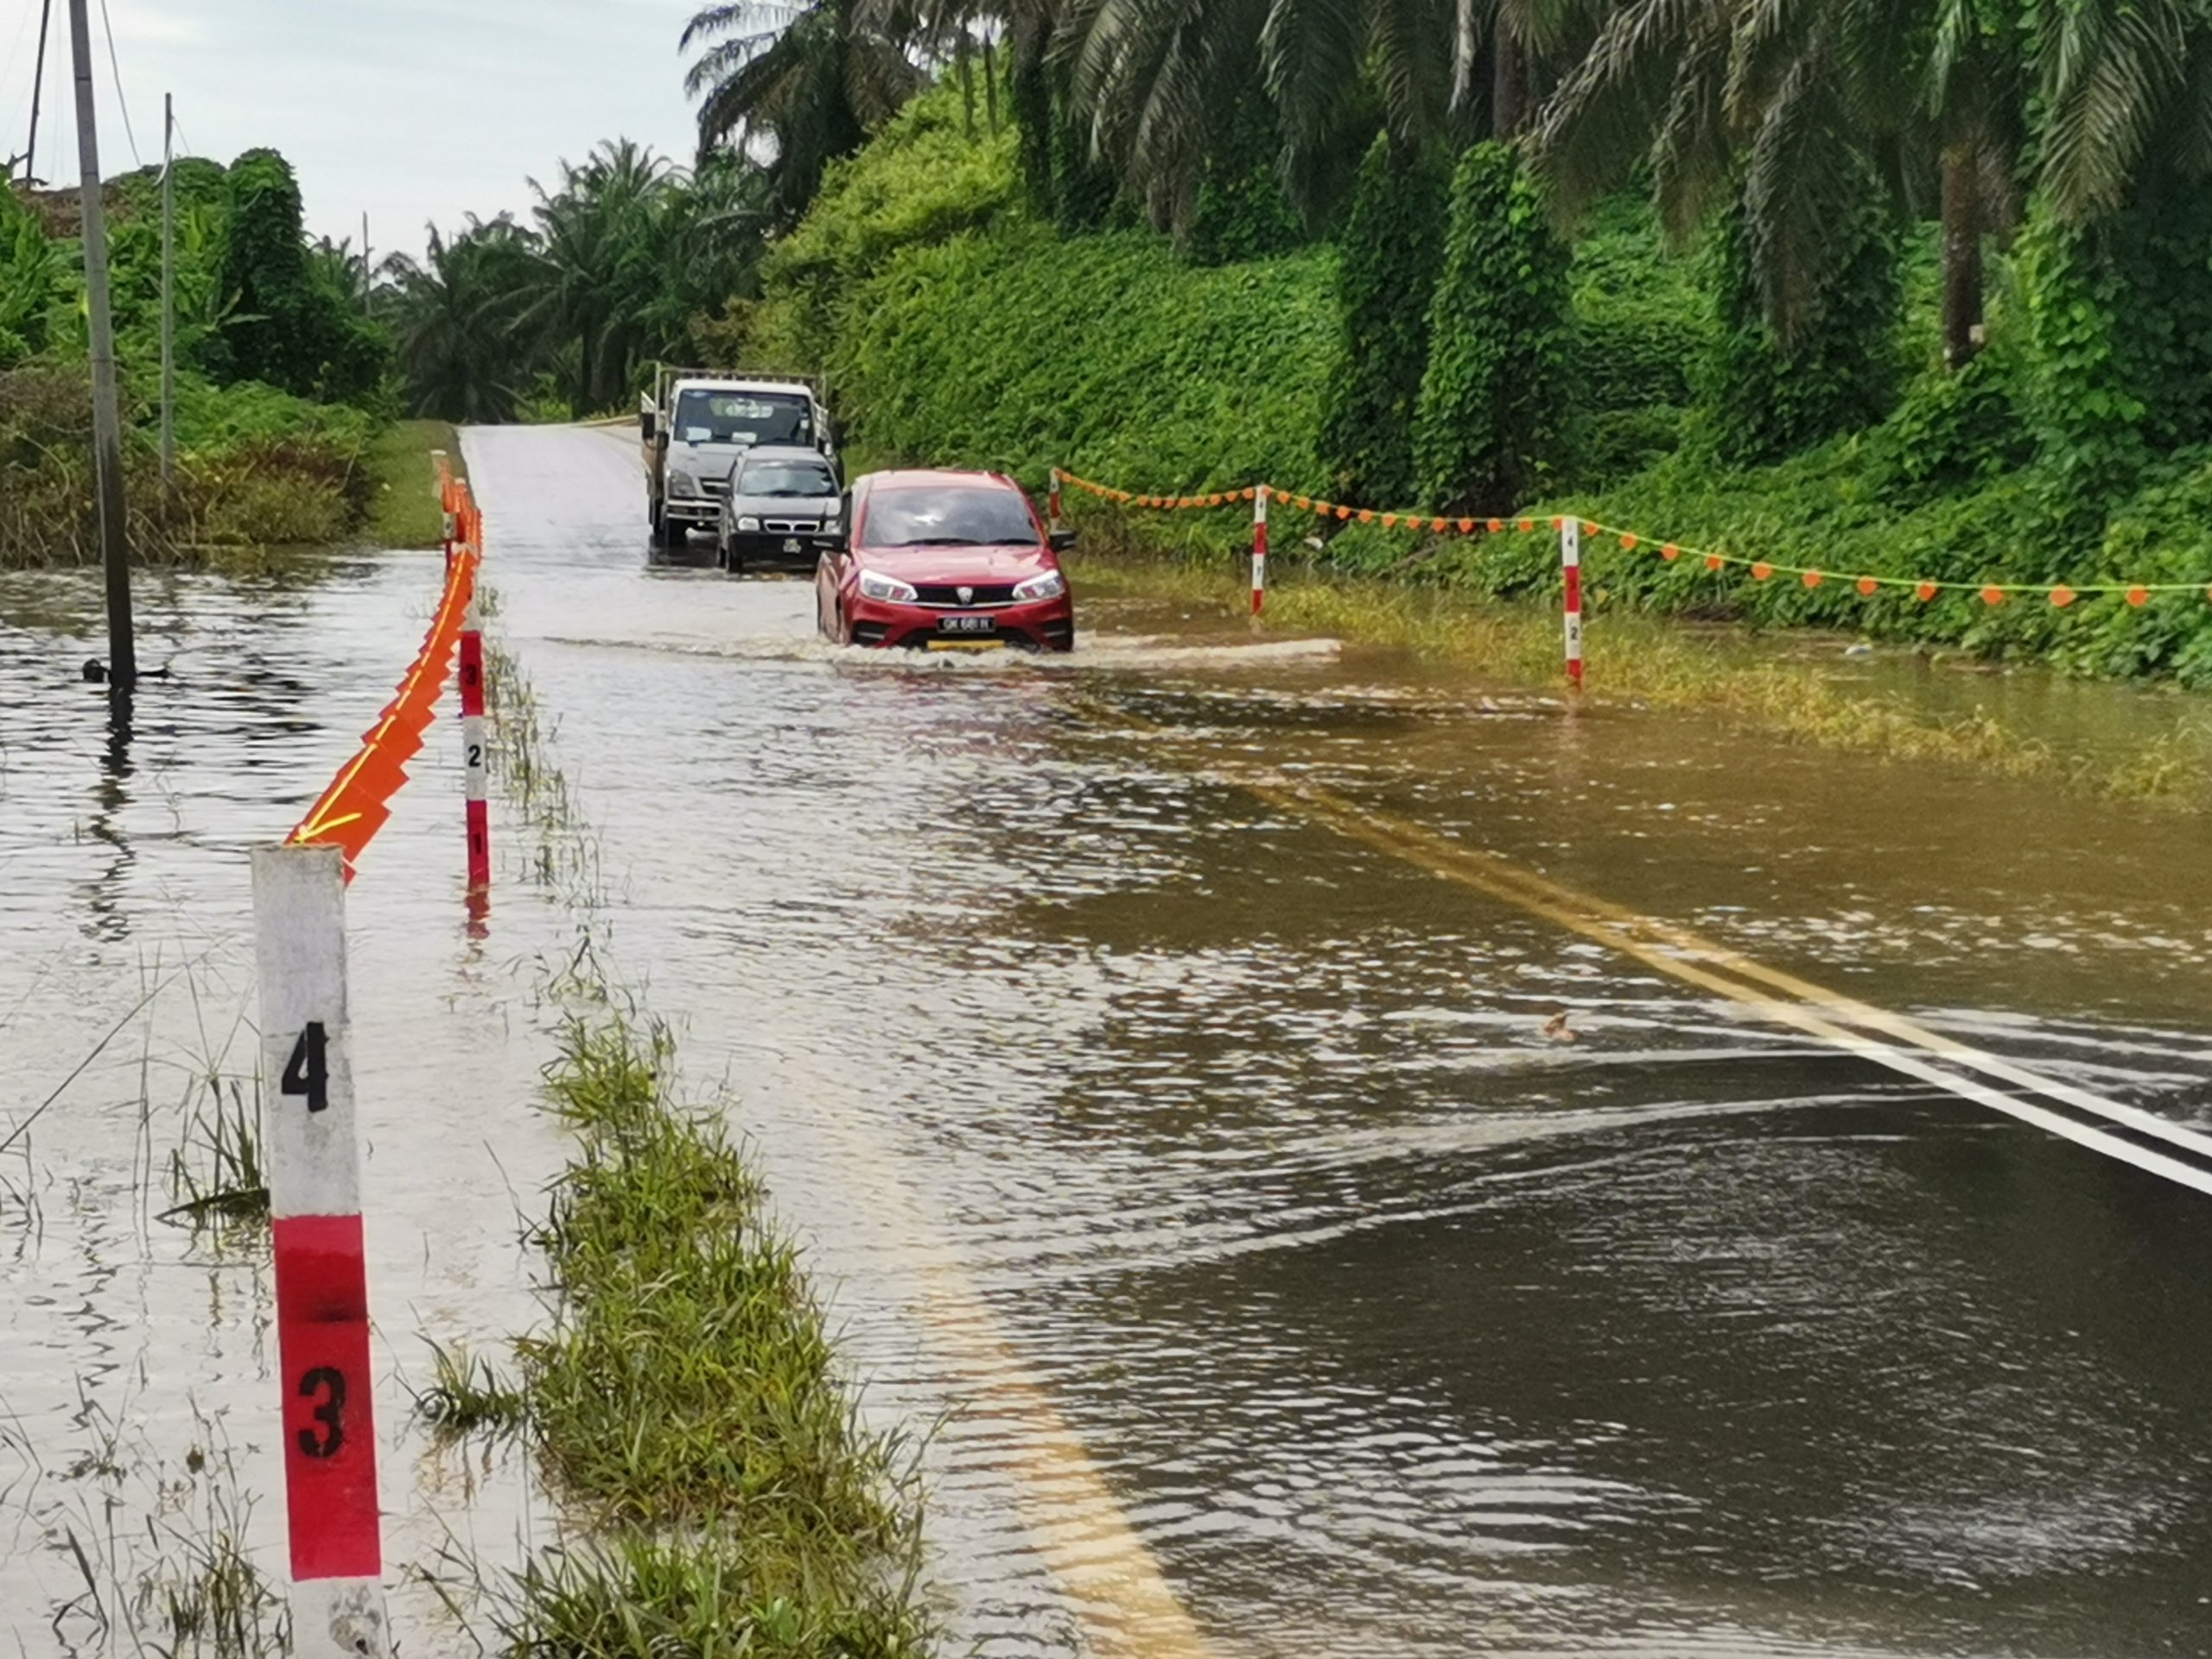 La route Bukit Peninjau est fermée pour réparations, les usagers de la route doivent utiliser l’alternative Beluru-Bakong